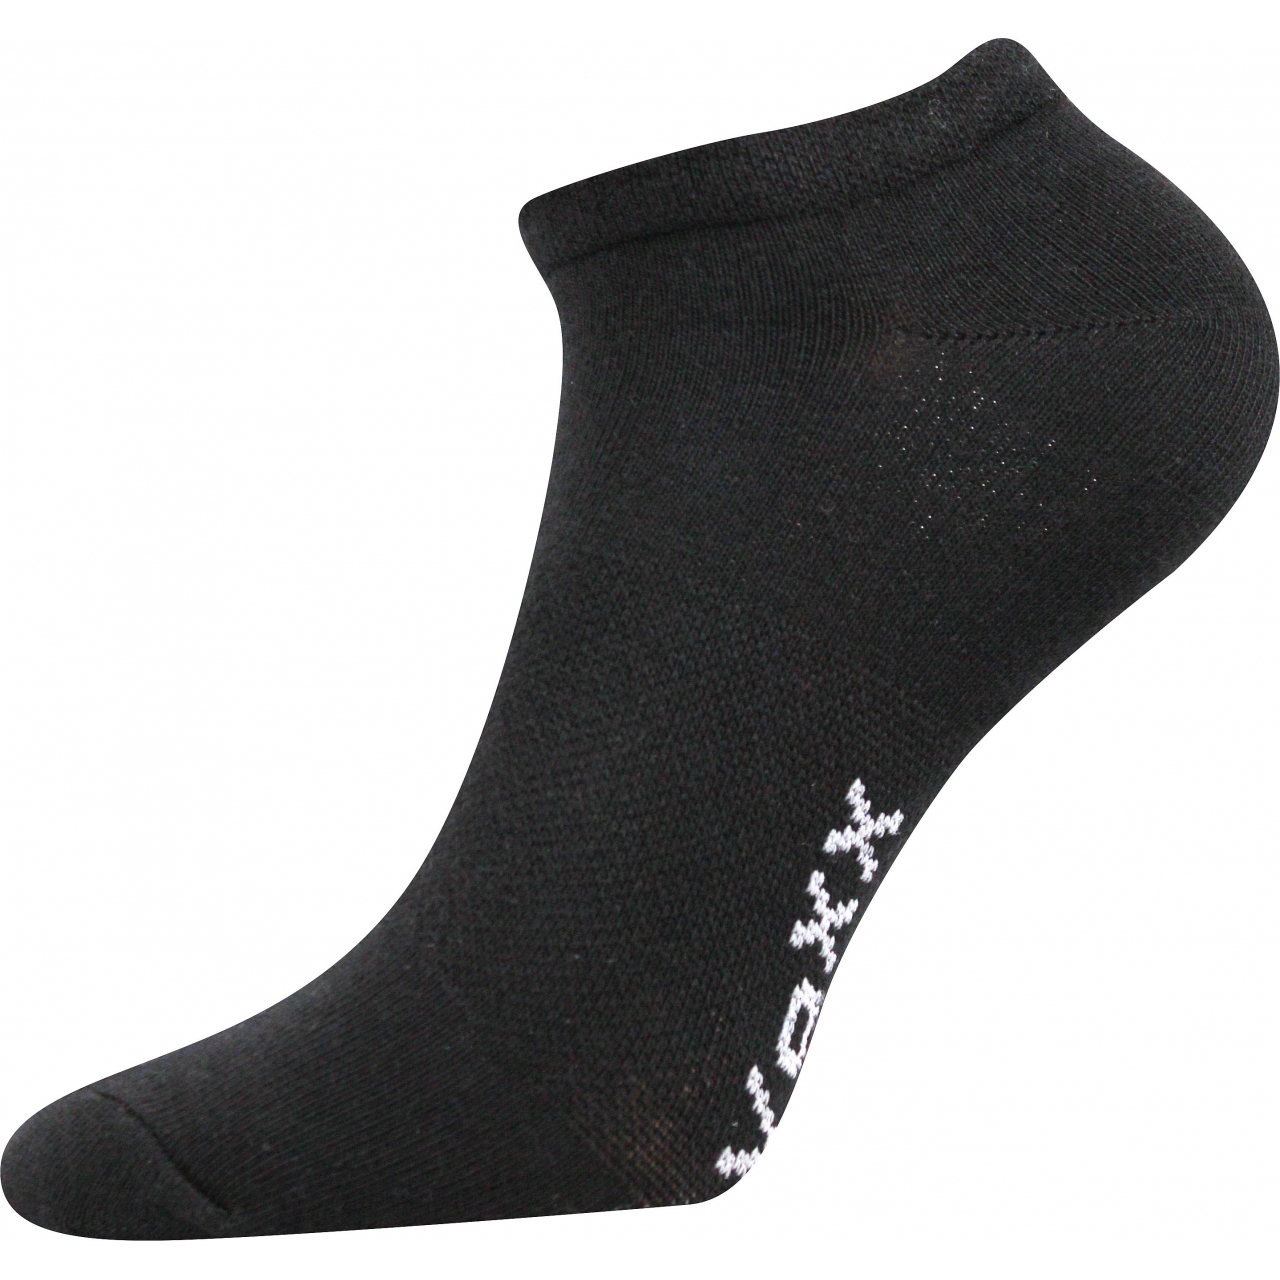 Ponožky unisex Voxx Rex 00 - černé, 43-46